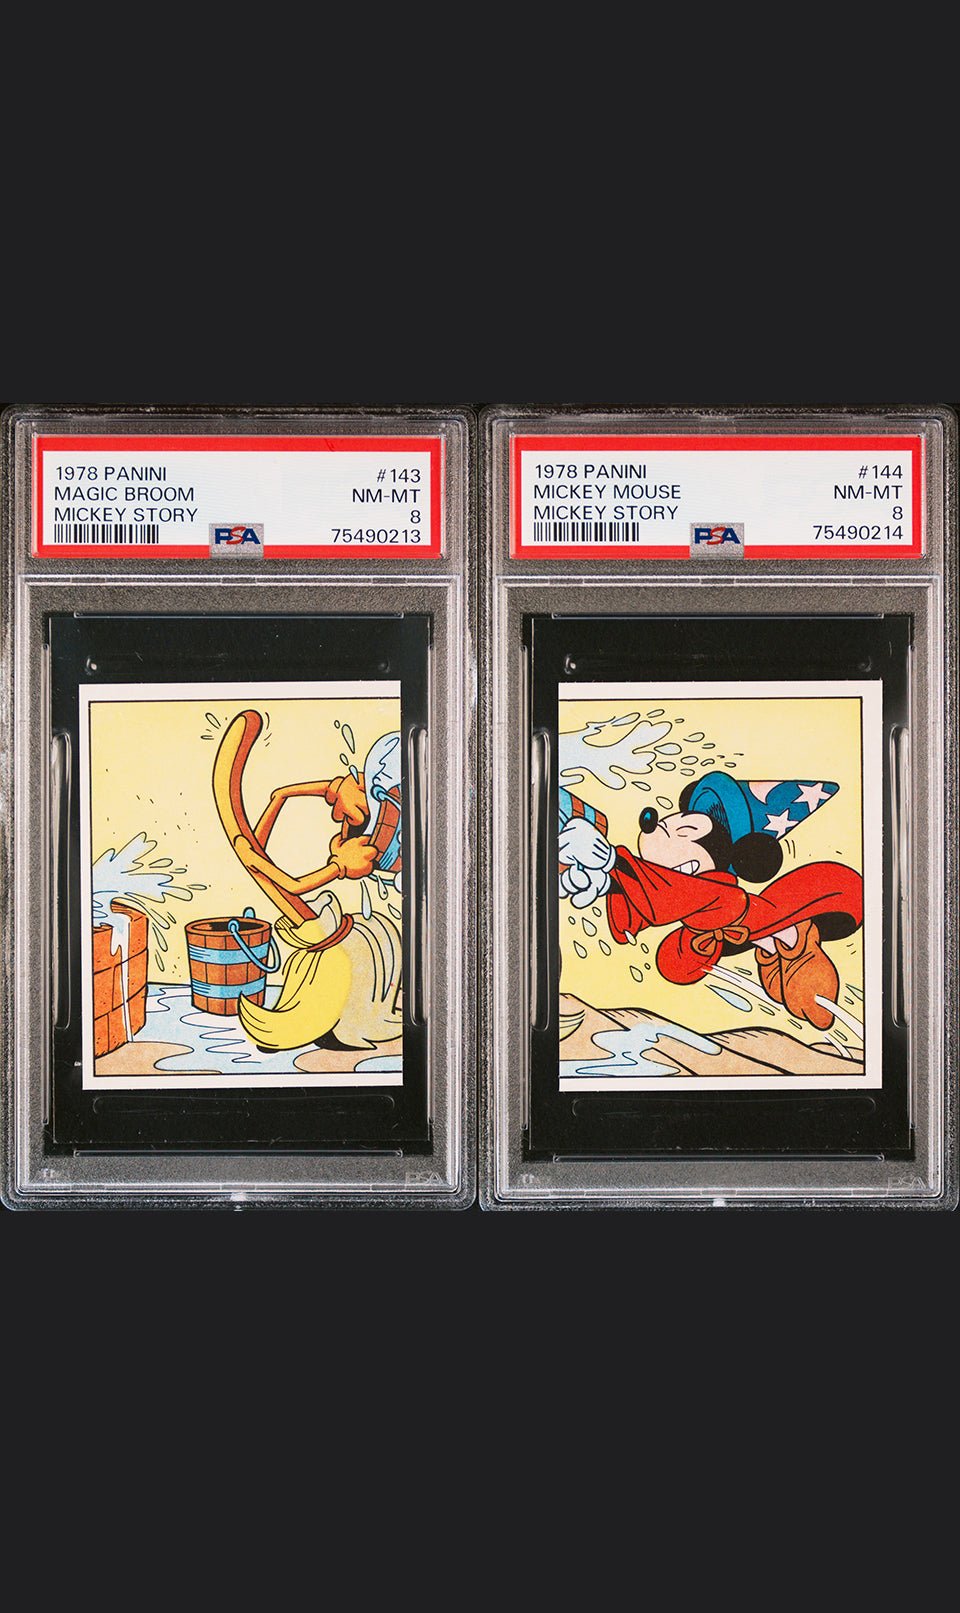 MICKEY MOUSE Fantasia PSA 8 1978 Panini Mickey Story Sticker #143 & #144 Disney Base Graded Cards - Hobby Gems